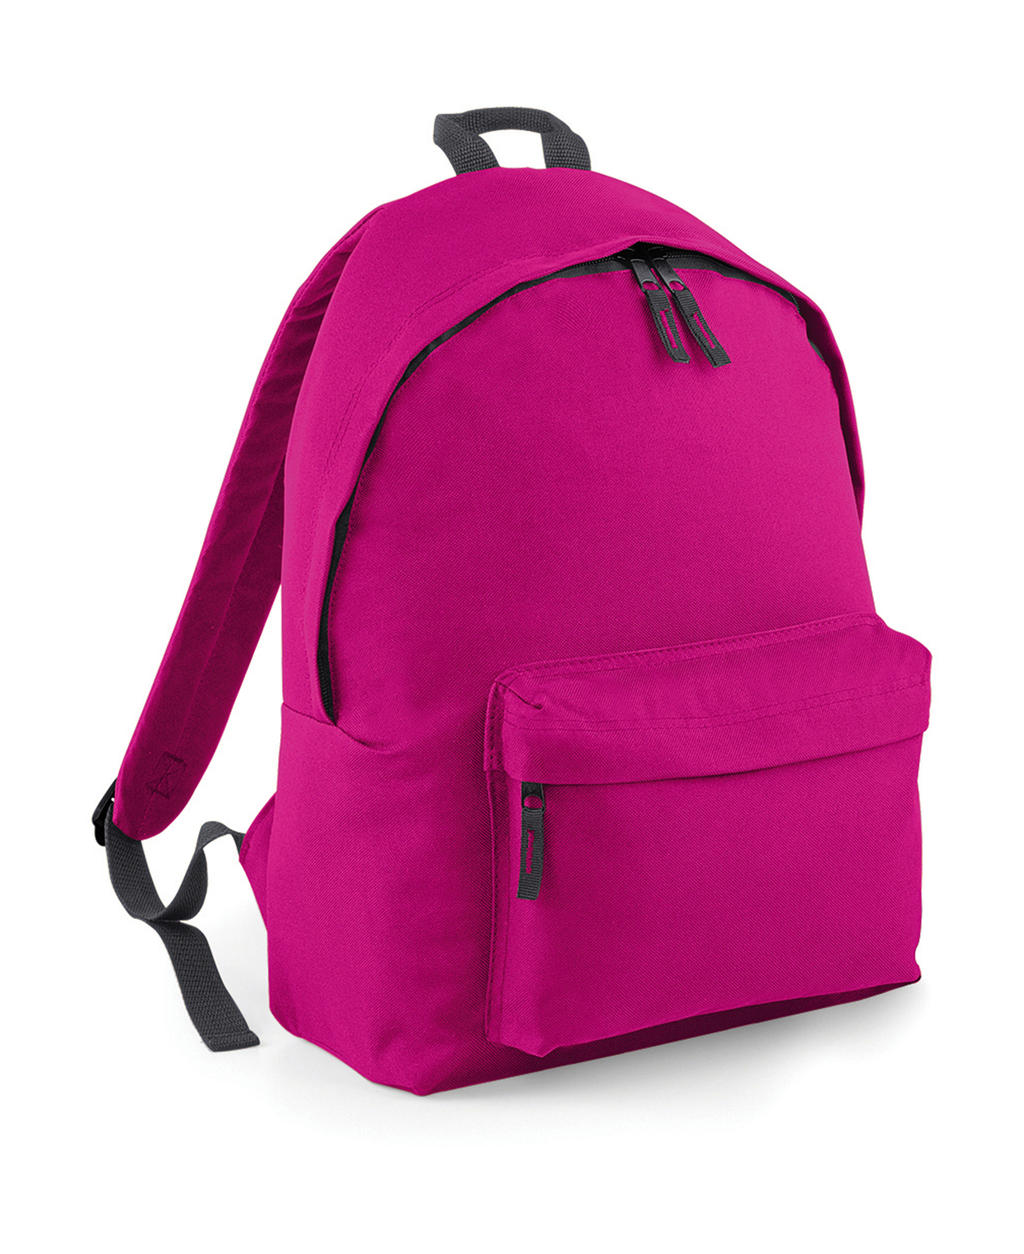  Original Fashion Backpack in Farbe Fuchsia/Graphite Grey